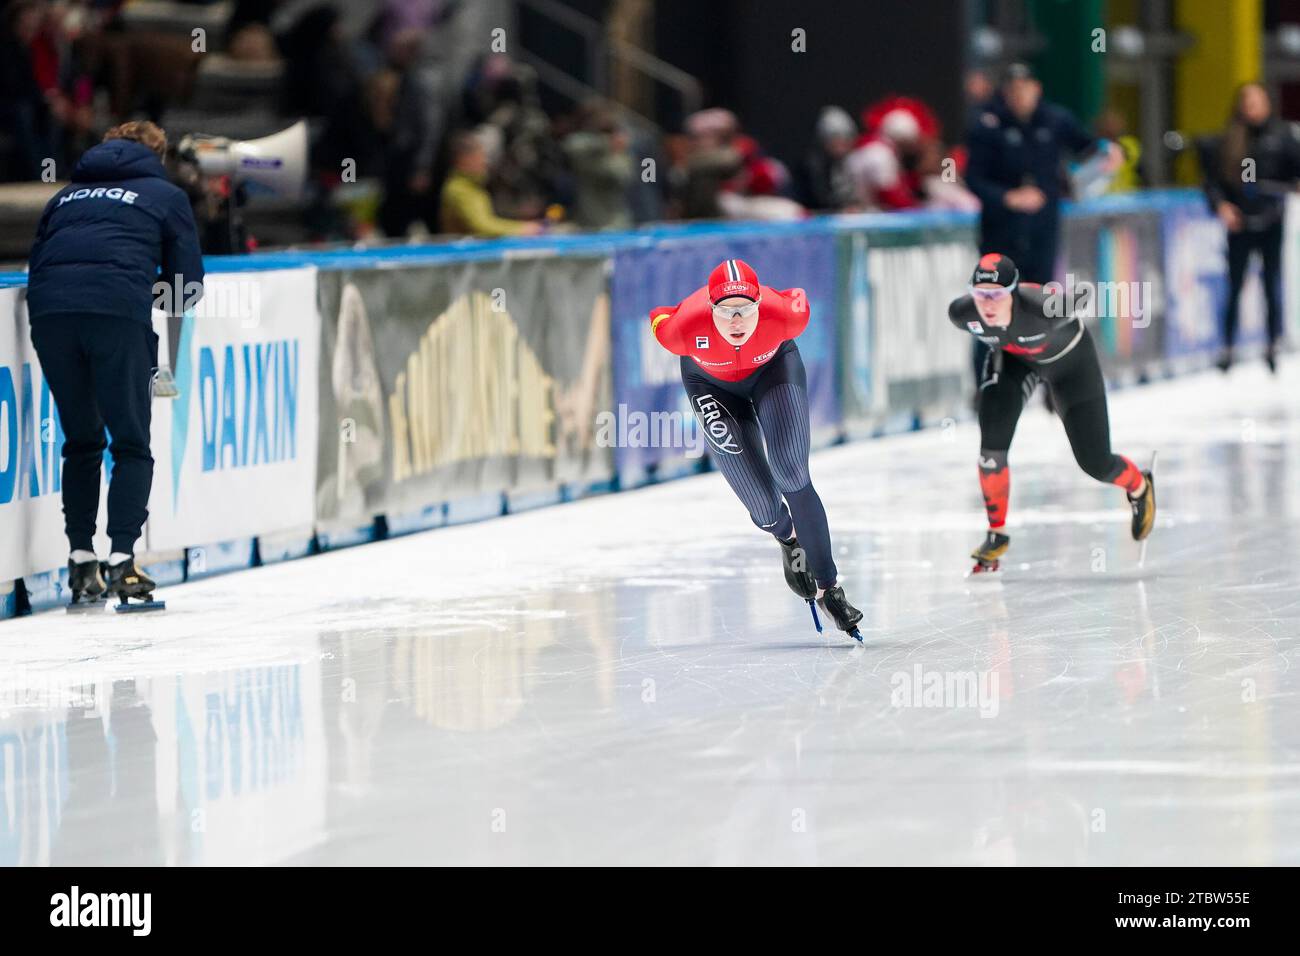 Ragne Wiklund, de Norvège, Ivanie Blondin, du Canada, en compétition dans le groupe A féminin du 3000m lors de la coupe du monde de patinage de vitesse ISU à l'Arena Lodowa, le 8 décembre 2023 à Tomaszow Mazowiecki, en Pologne Banque D'Images